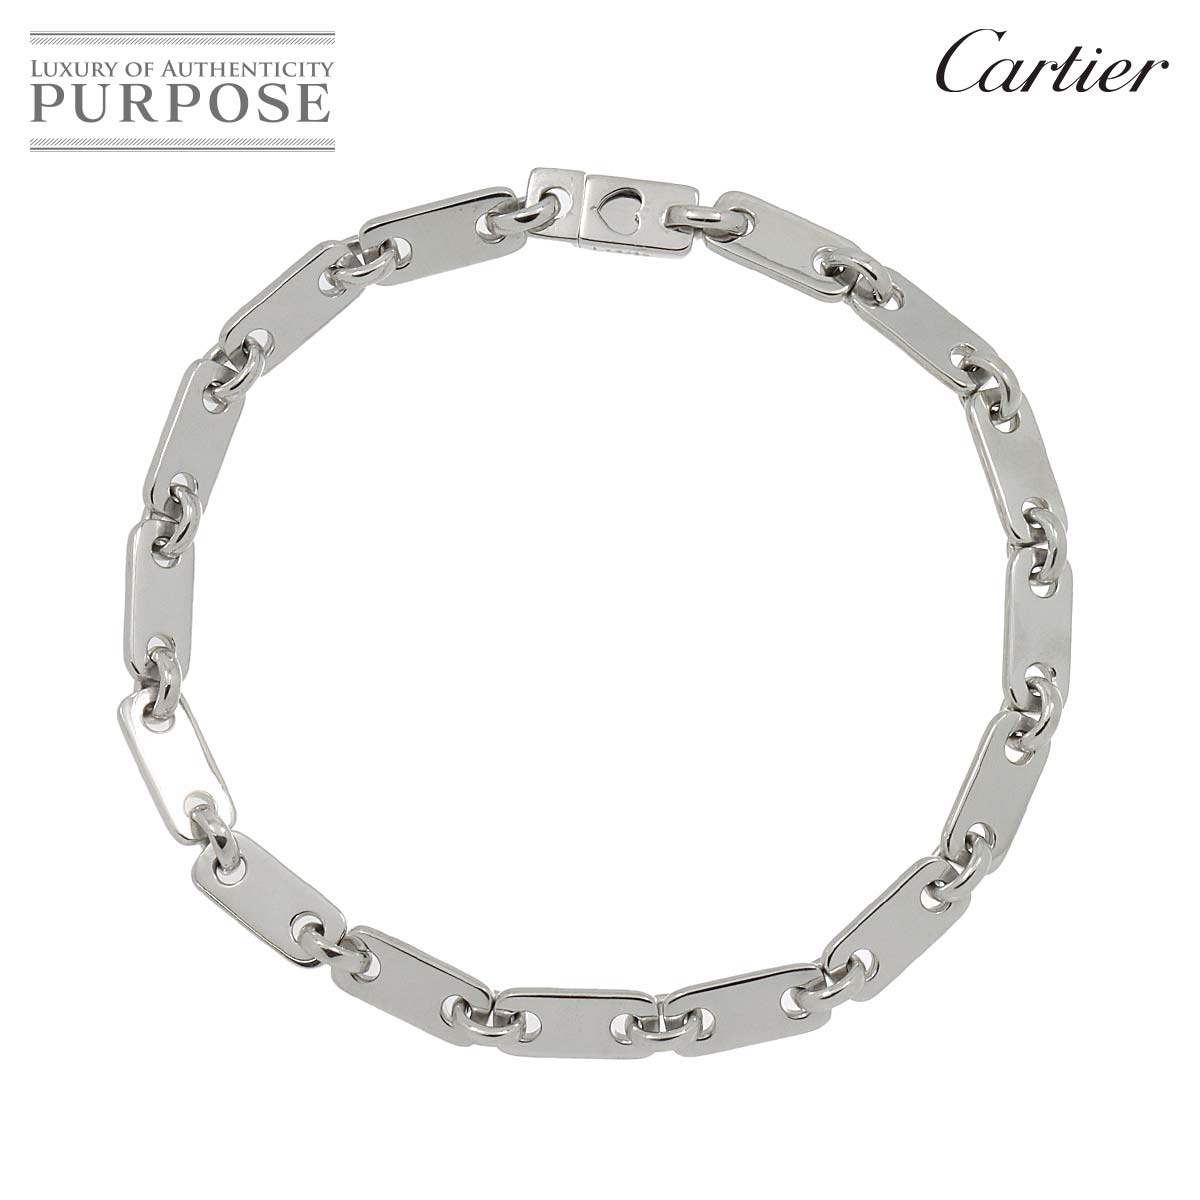 【新品同様】 カルティエ Cartier フィディリティ ブレスレット 17.5cm K18 WG ホワイトゴールド 750 キー付き Fidelity Bracelet【中古】